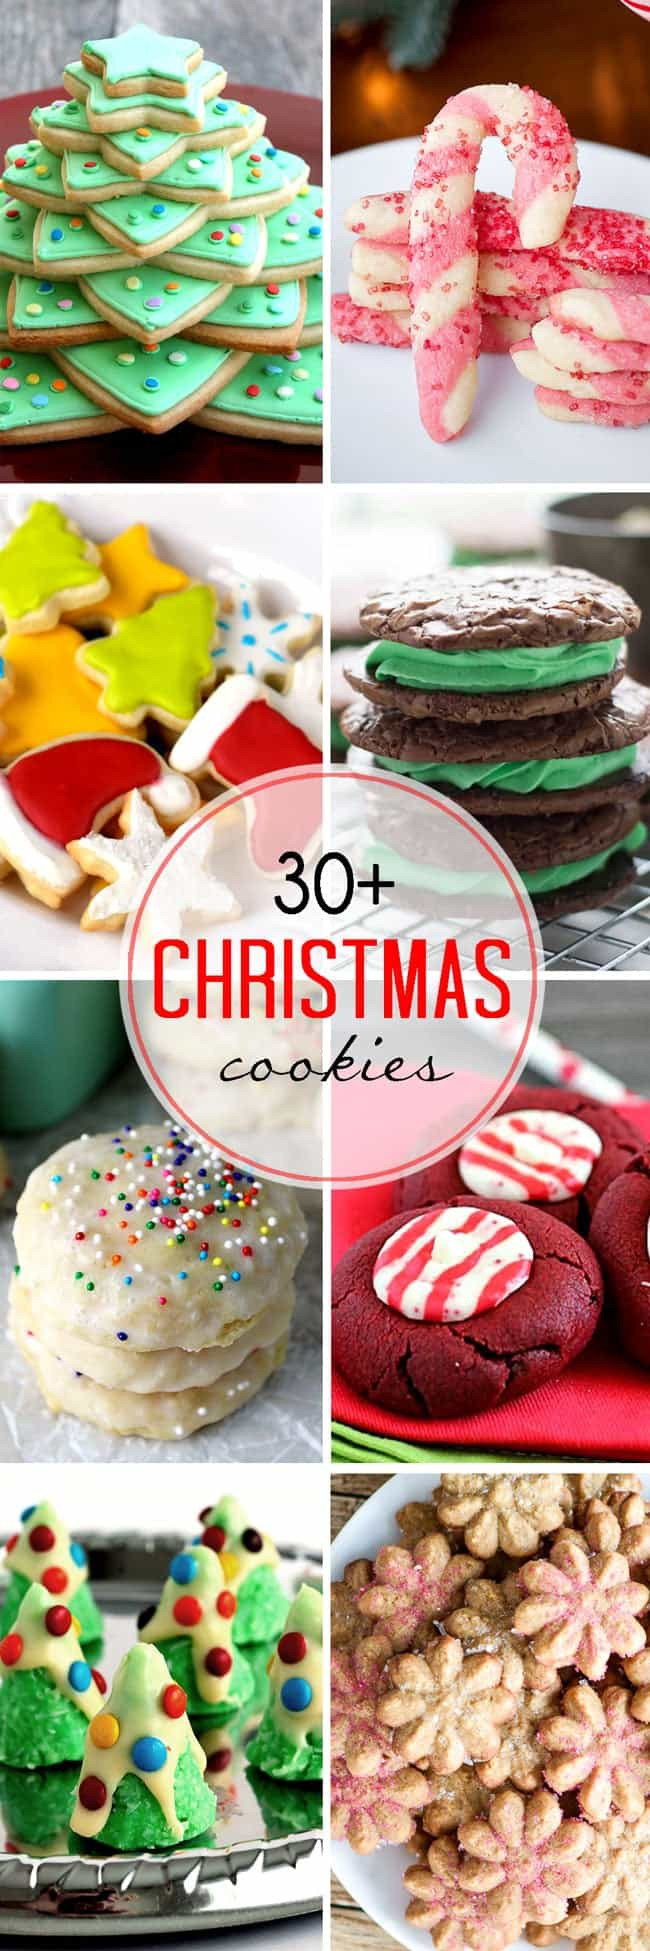 Pinterest Christmas Cookies
 30 Easy Christmas Cookies LemonsforLulu